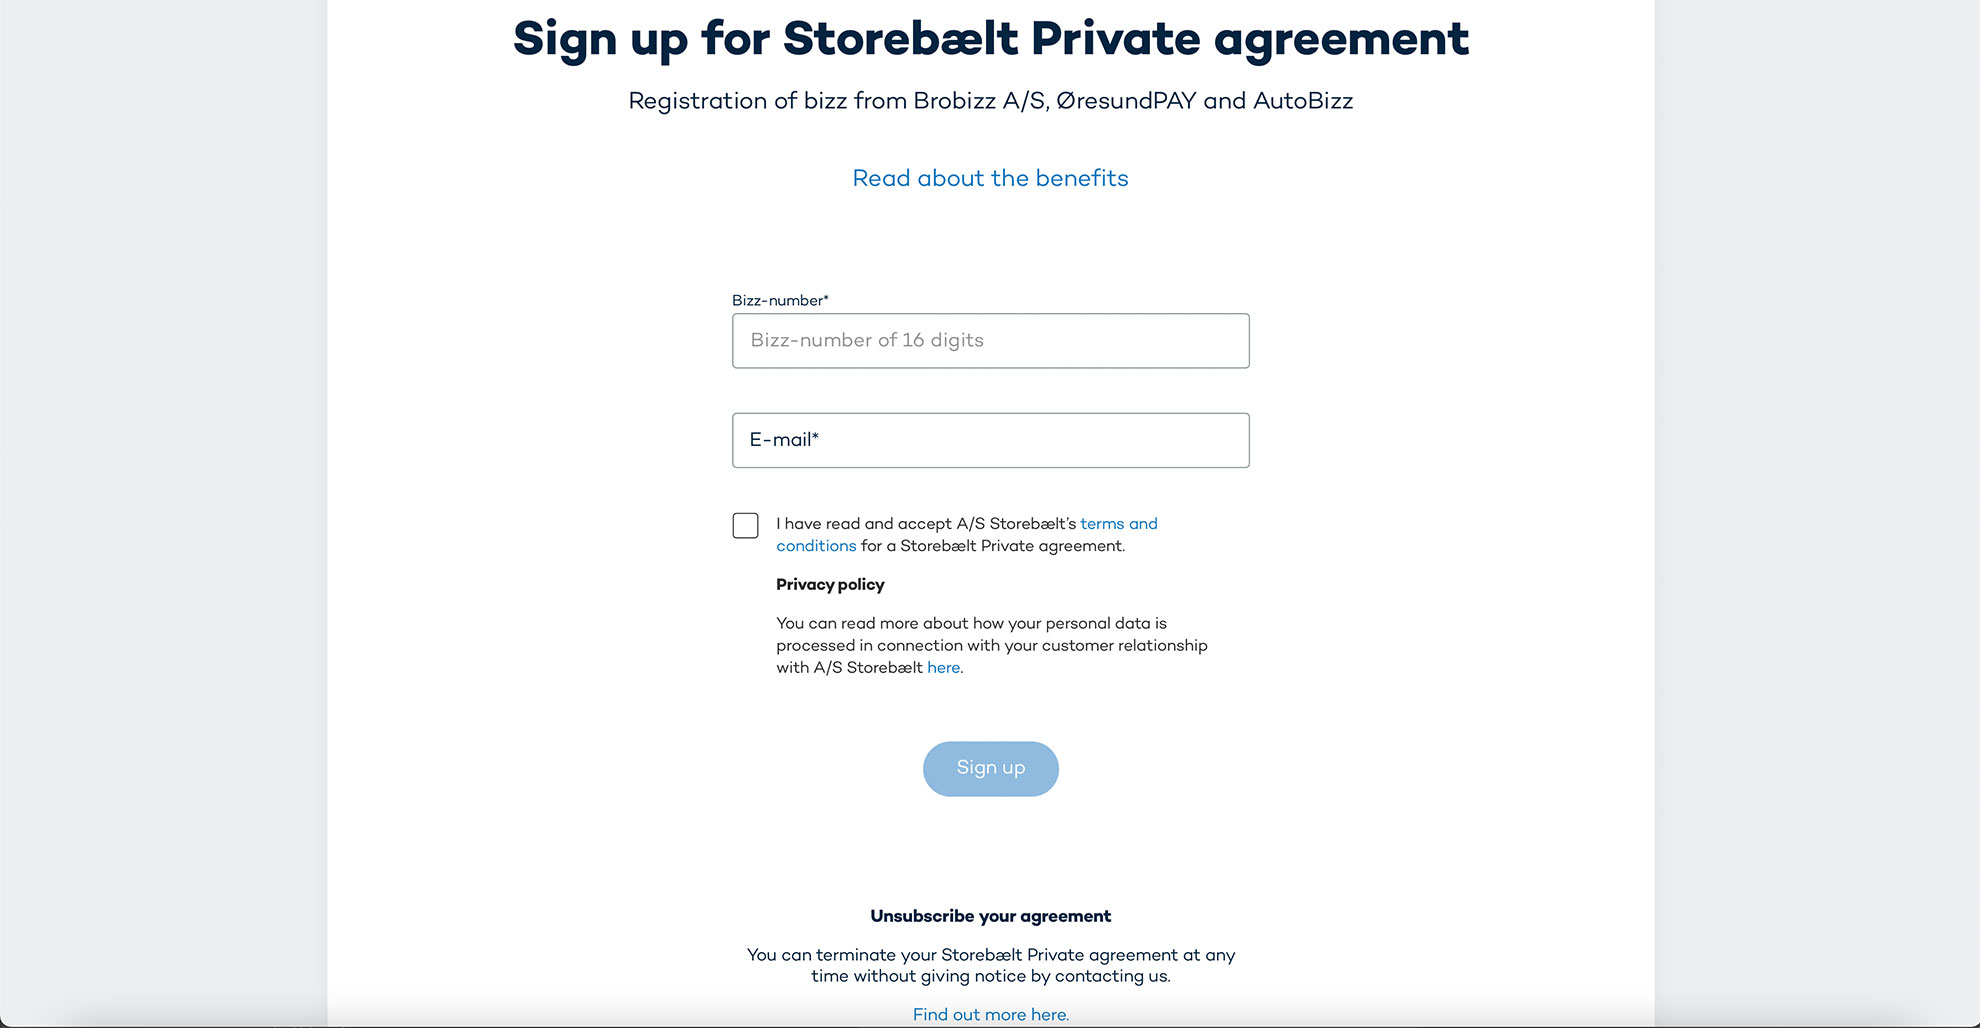 Anmeldung-Storebelt-Rabattvereinbarung-Private-Agreement-Screenshot